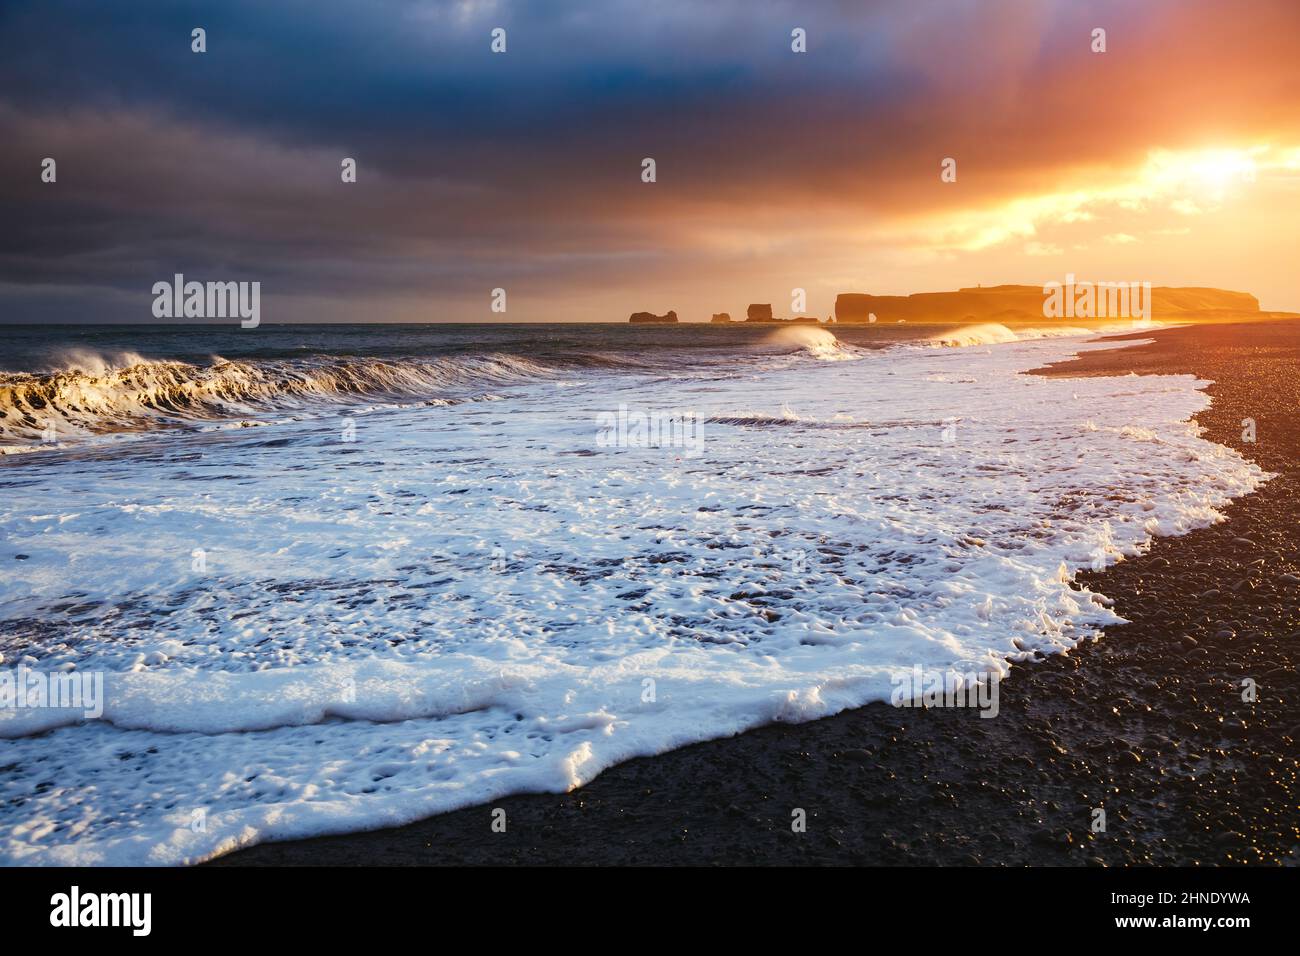 Epische Aussicht auf den Strand von Reynisfjara und sonnige Wellen. Lage Kap Dyrholaey, Atlantischer Ozean in der Nähe von Vik Dorf, Island, Europa. Landschaftlich schönes Bild von n Stockfoto